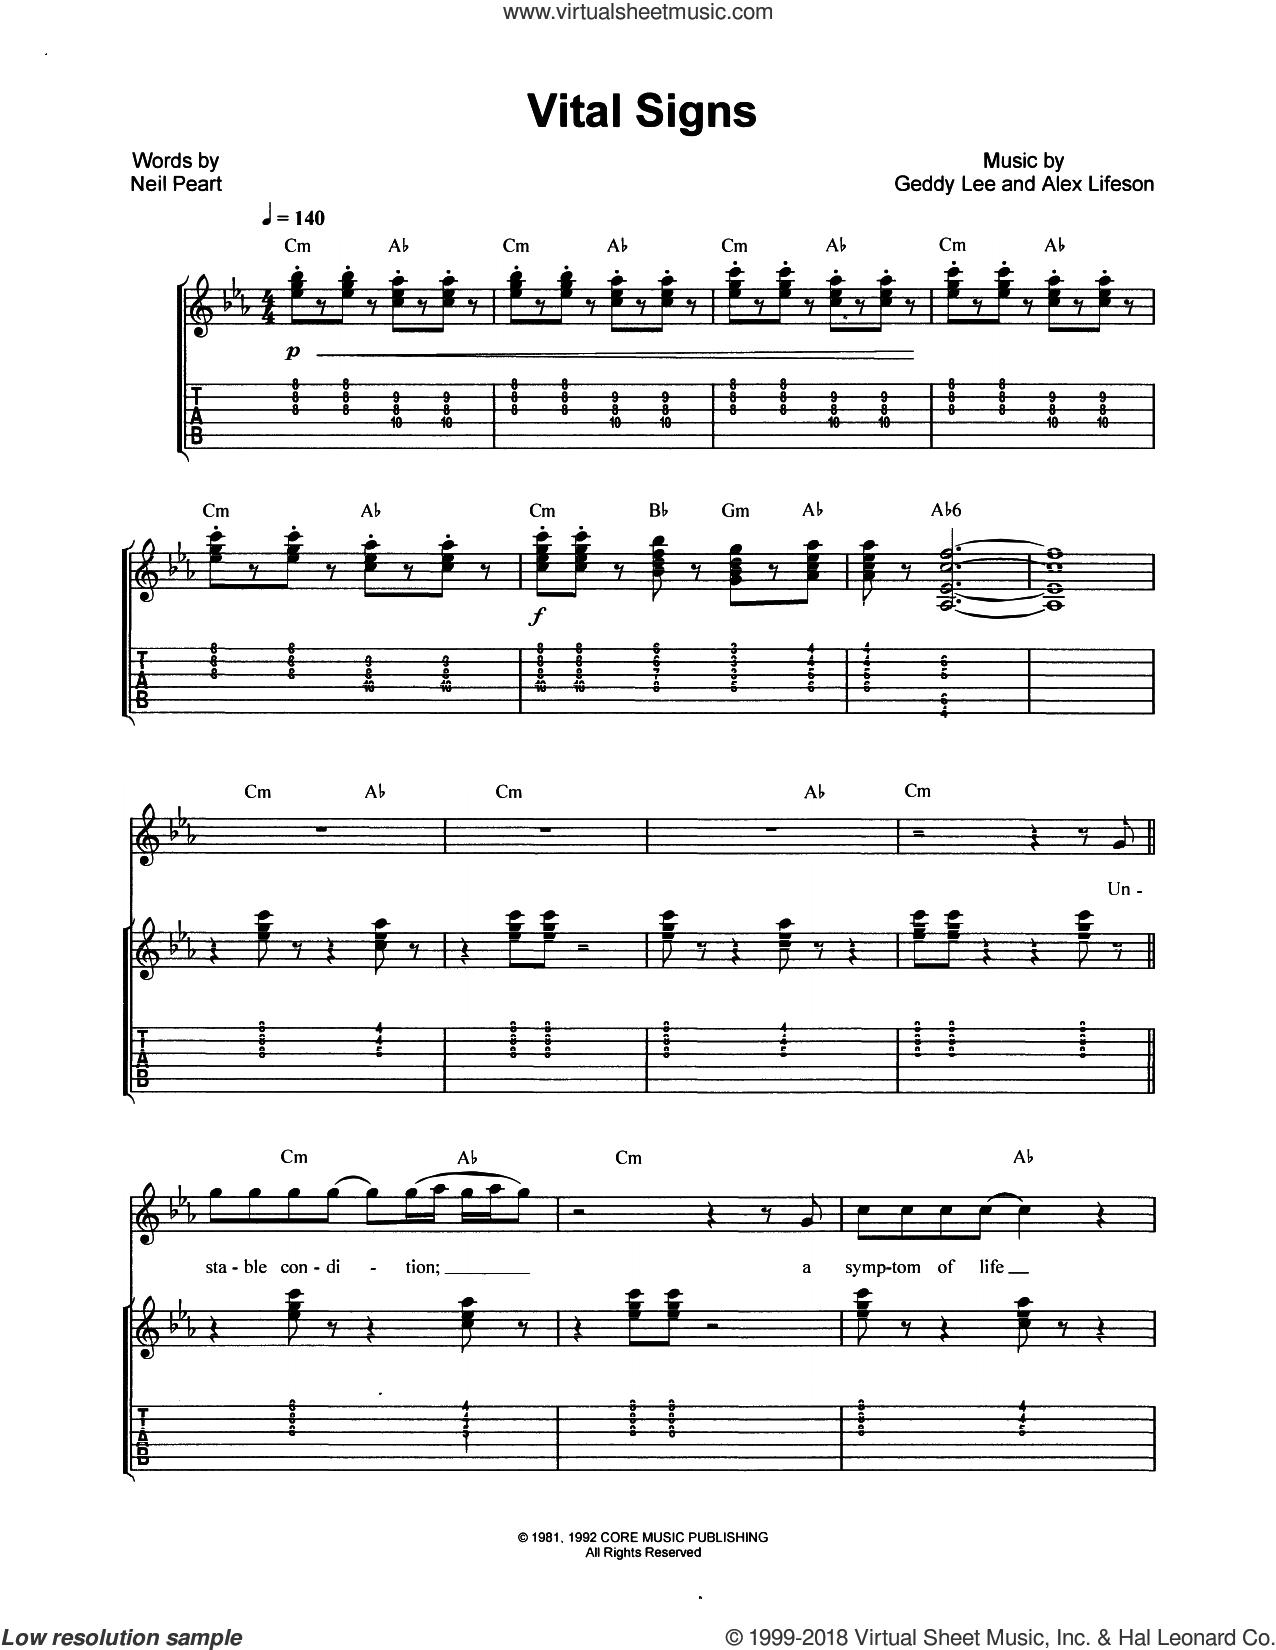 download free rush guitar tab book pdf